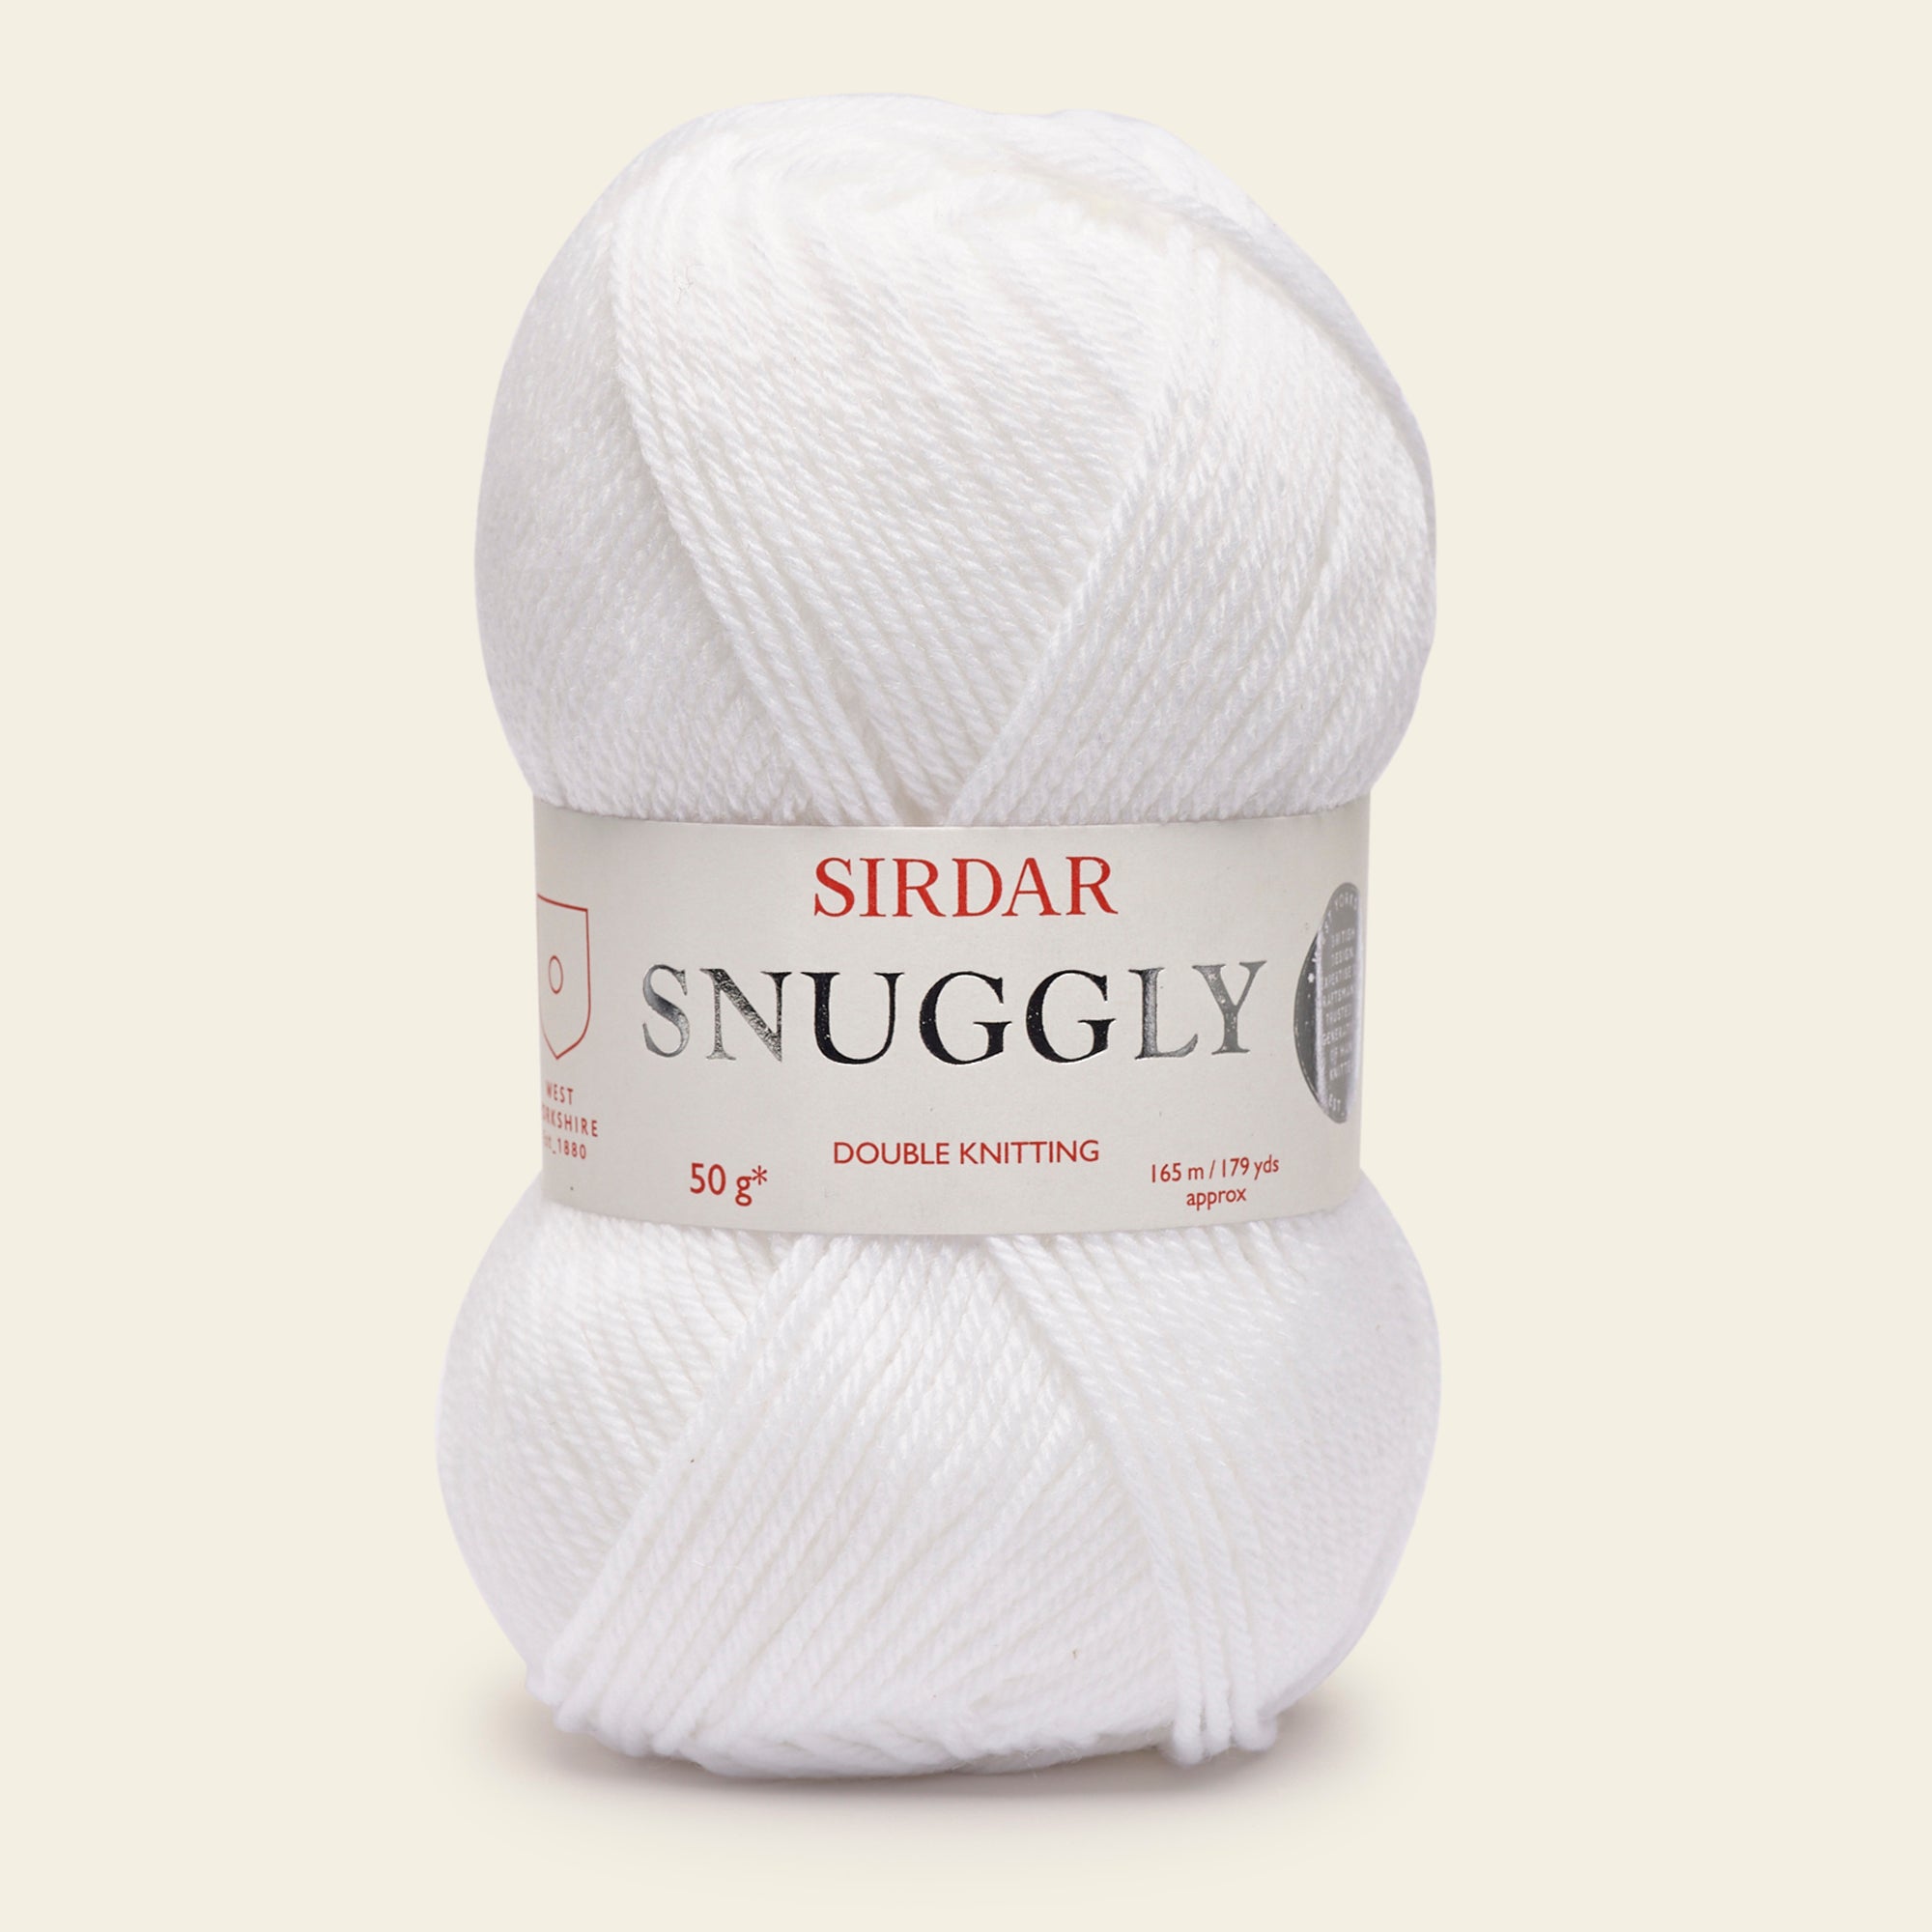 Sirdar Snuggly DK White Yarn